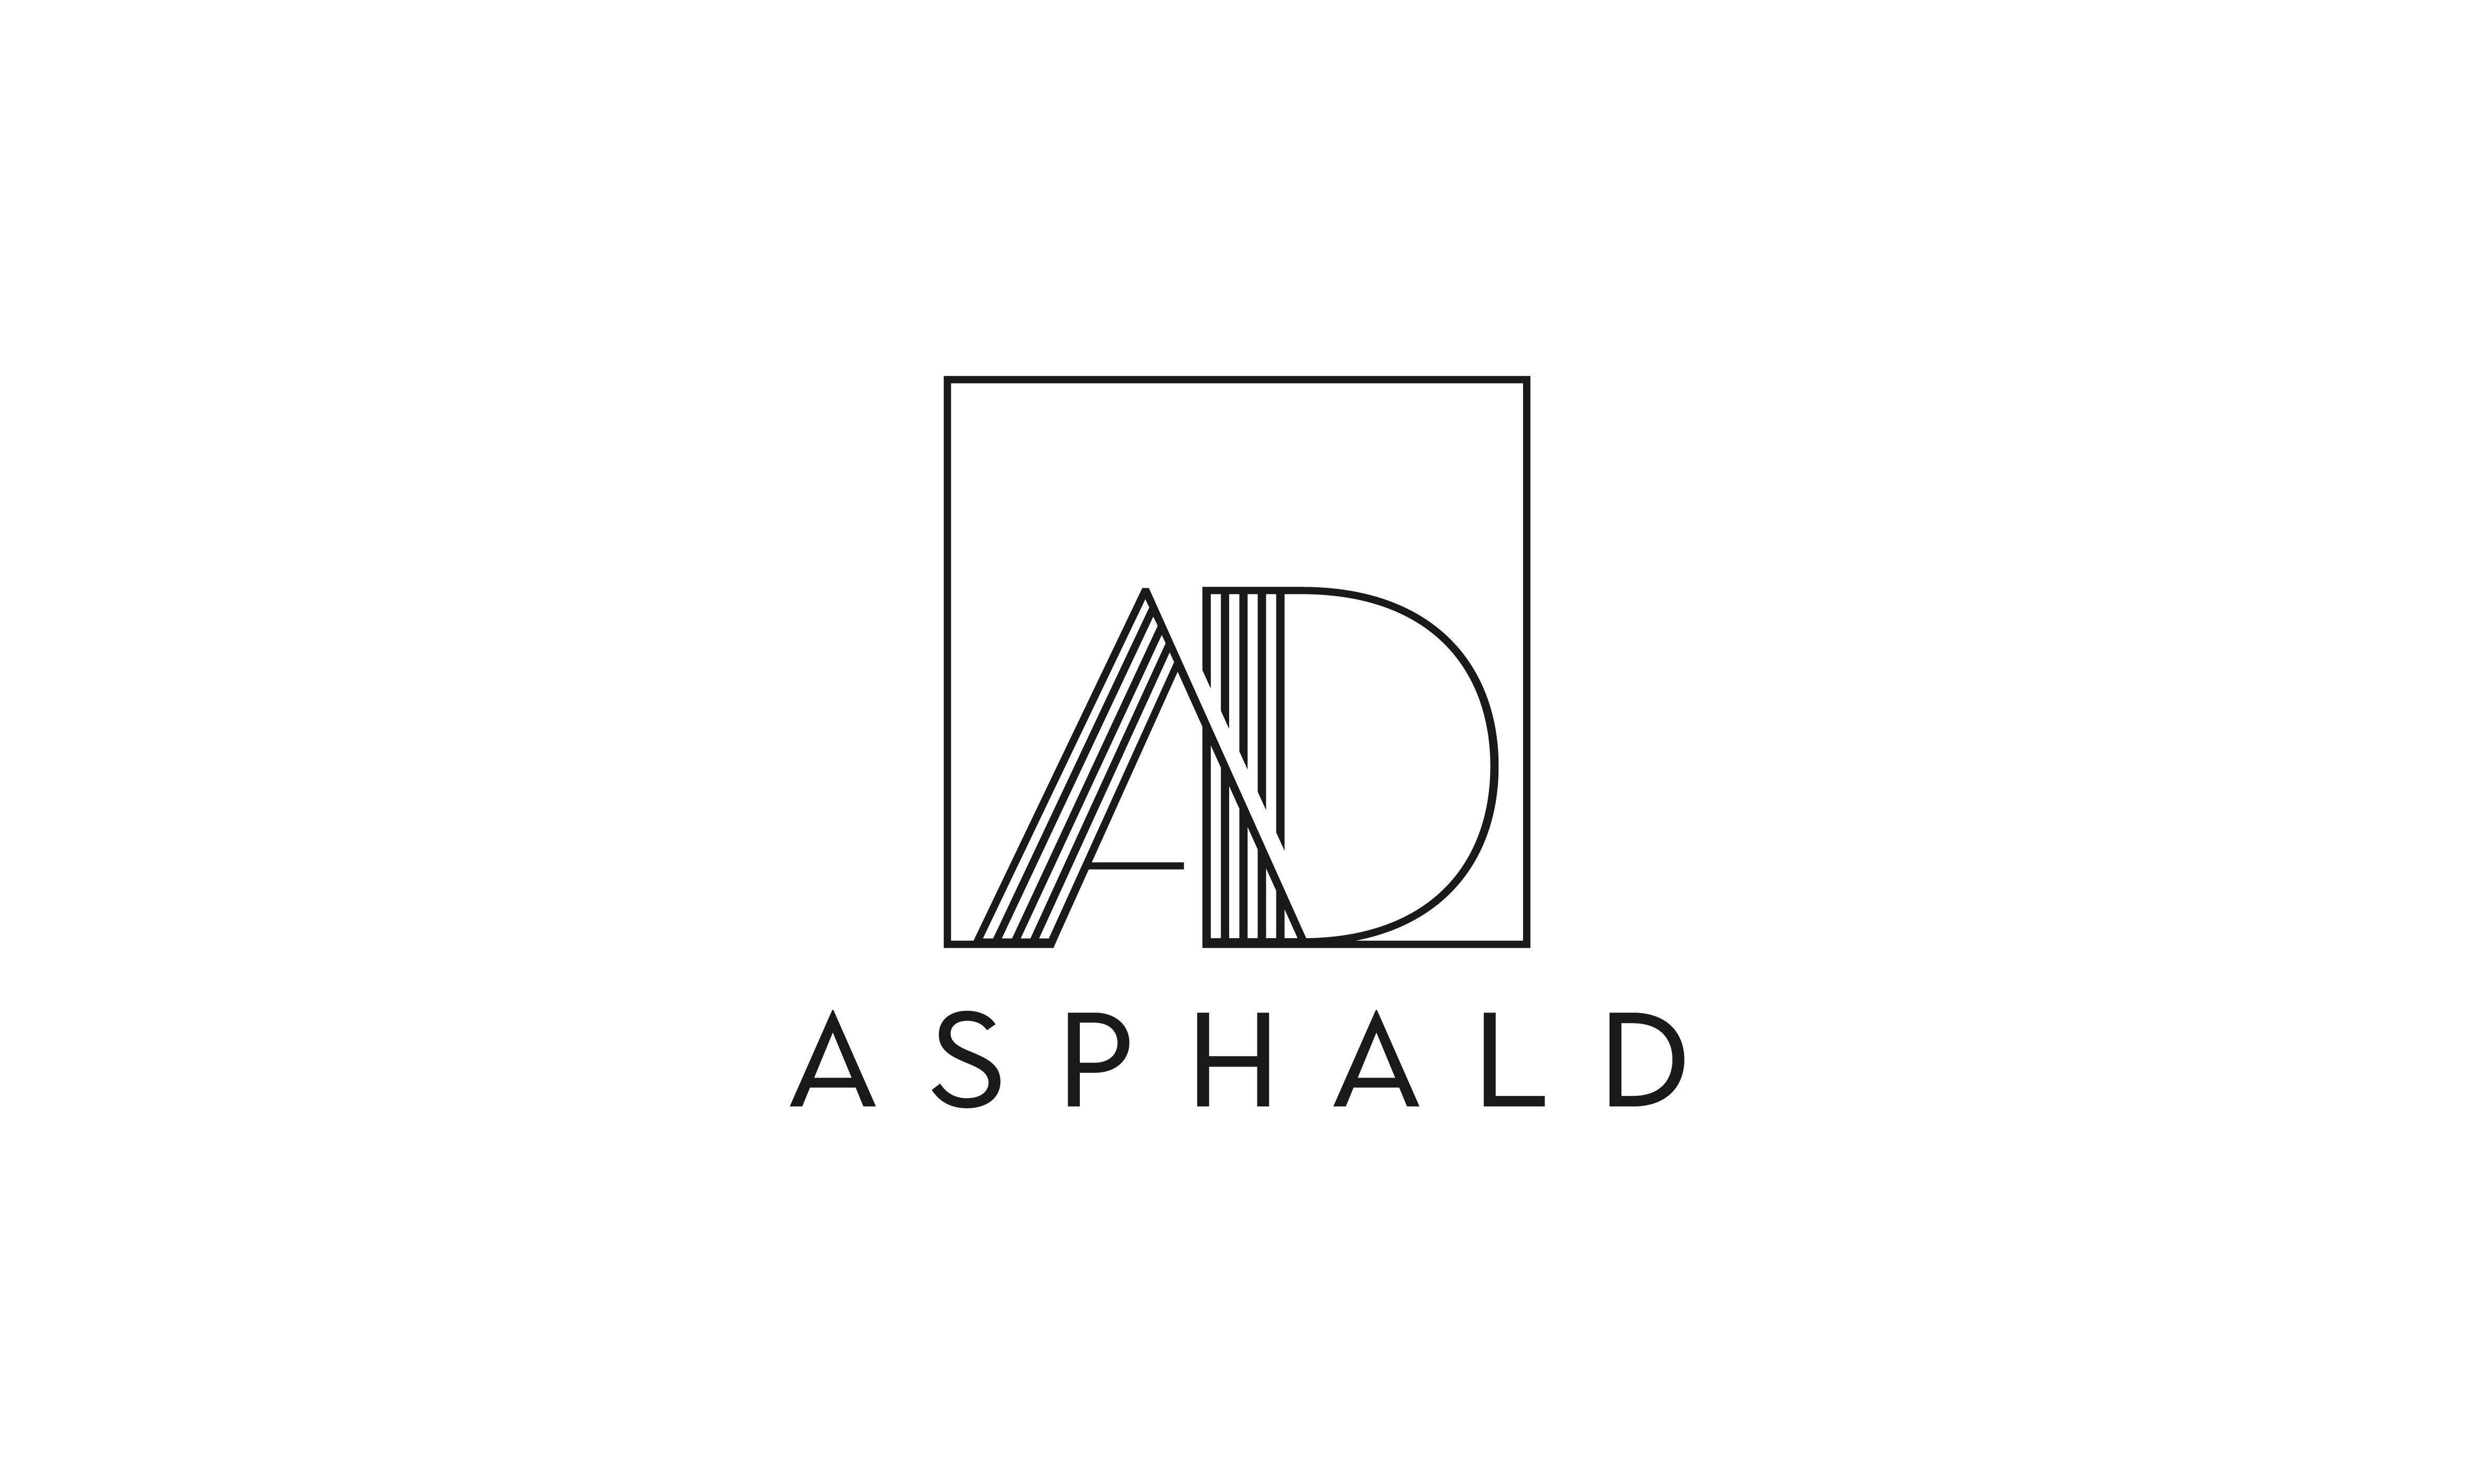 Asphald